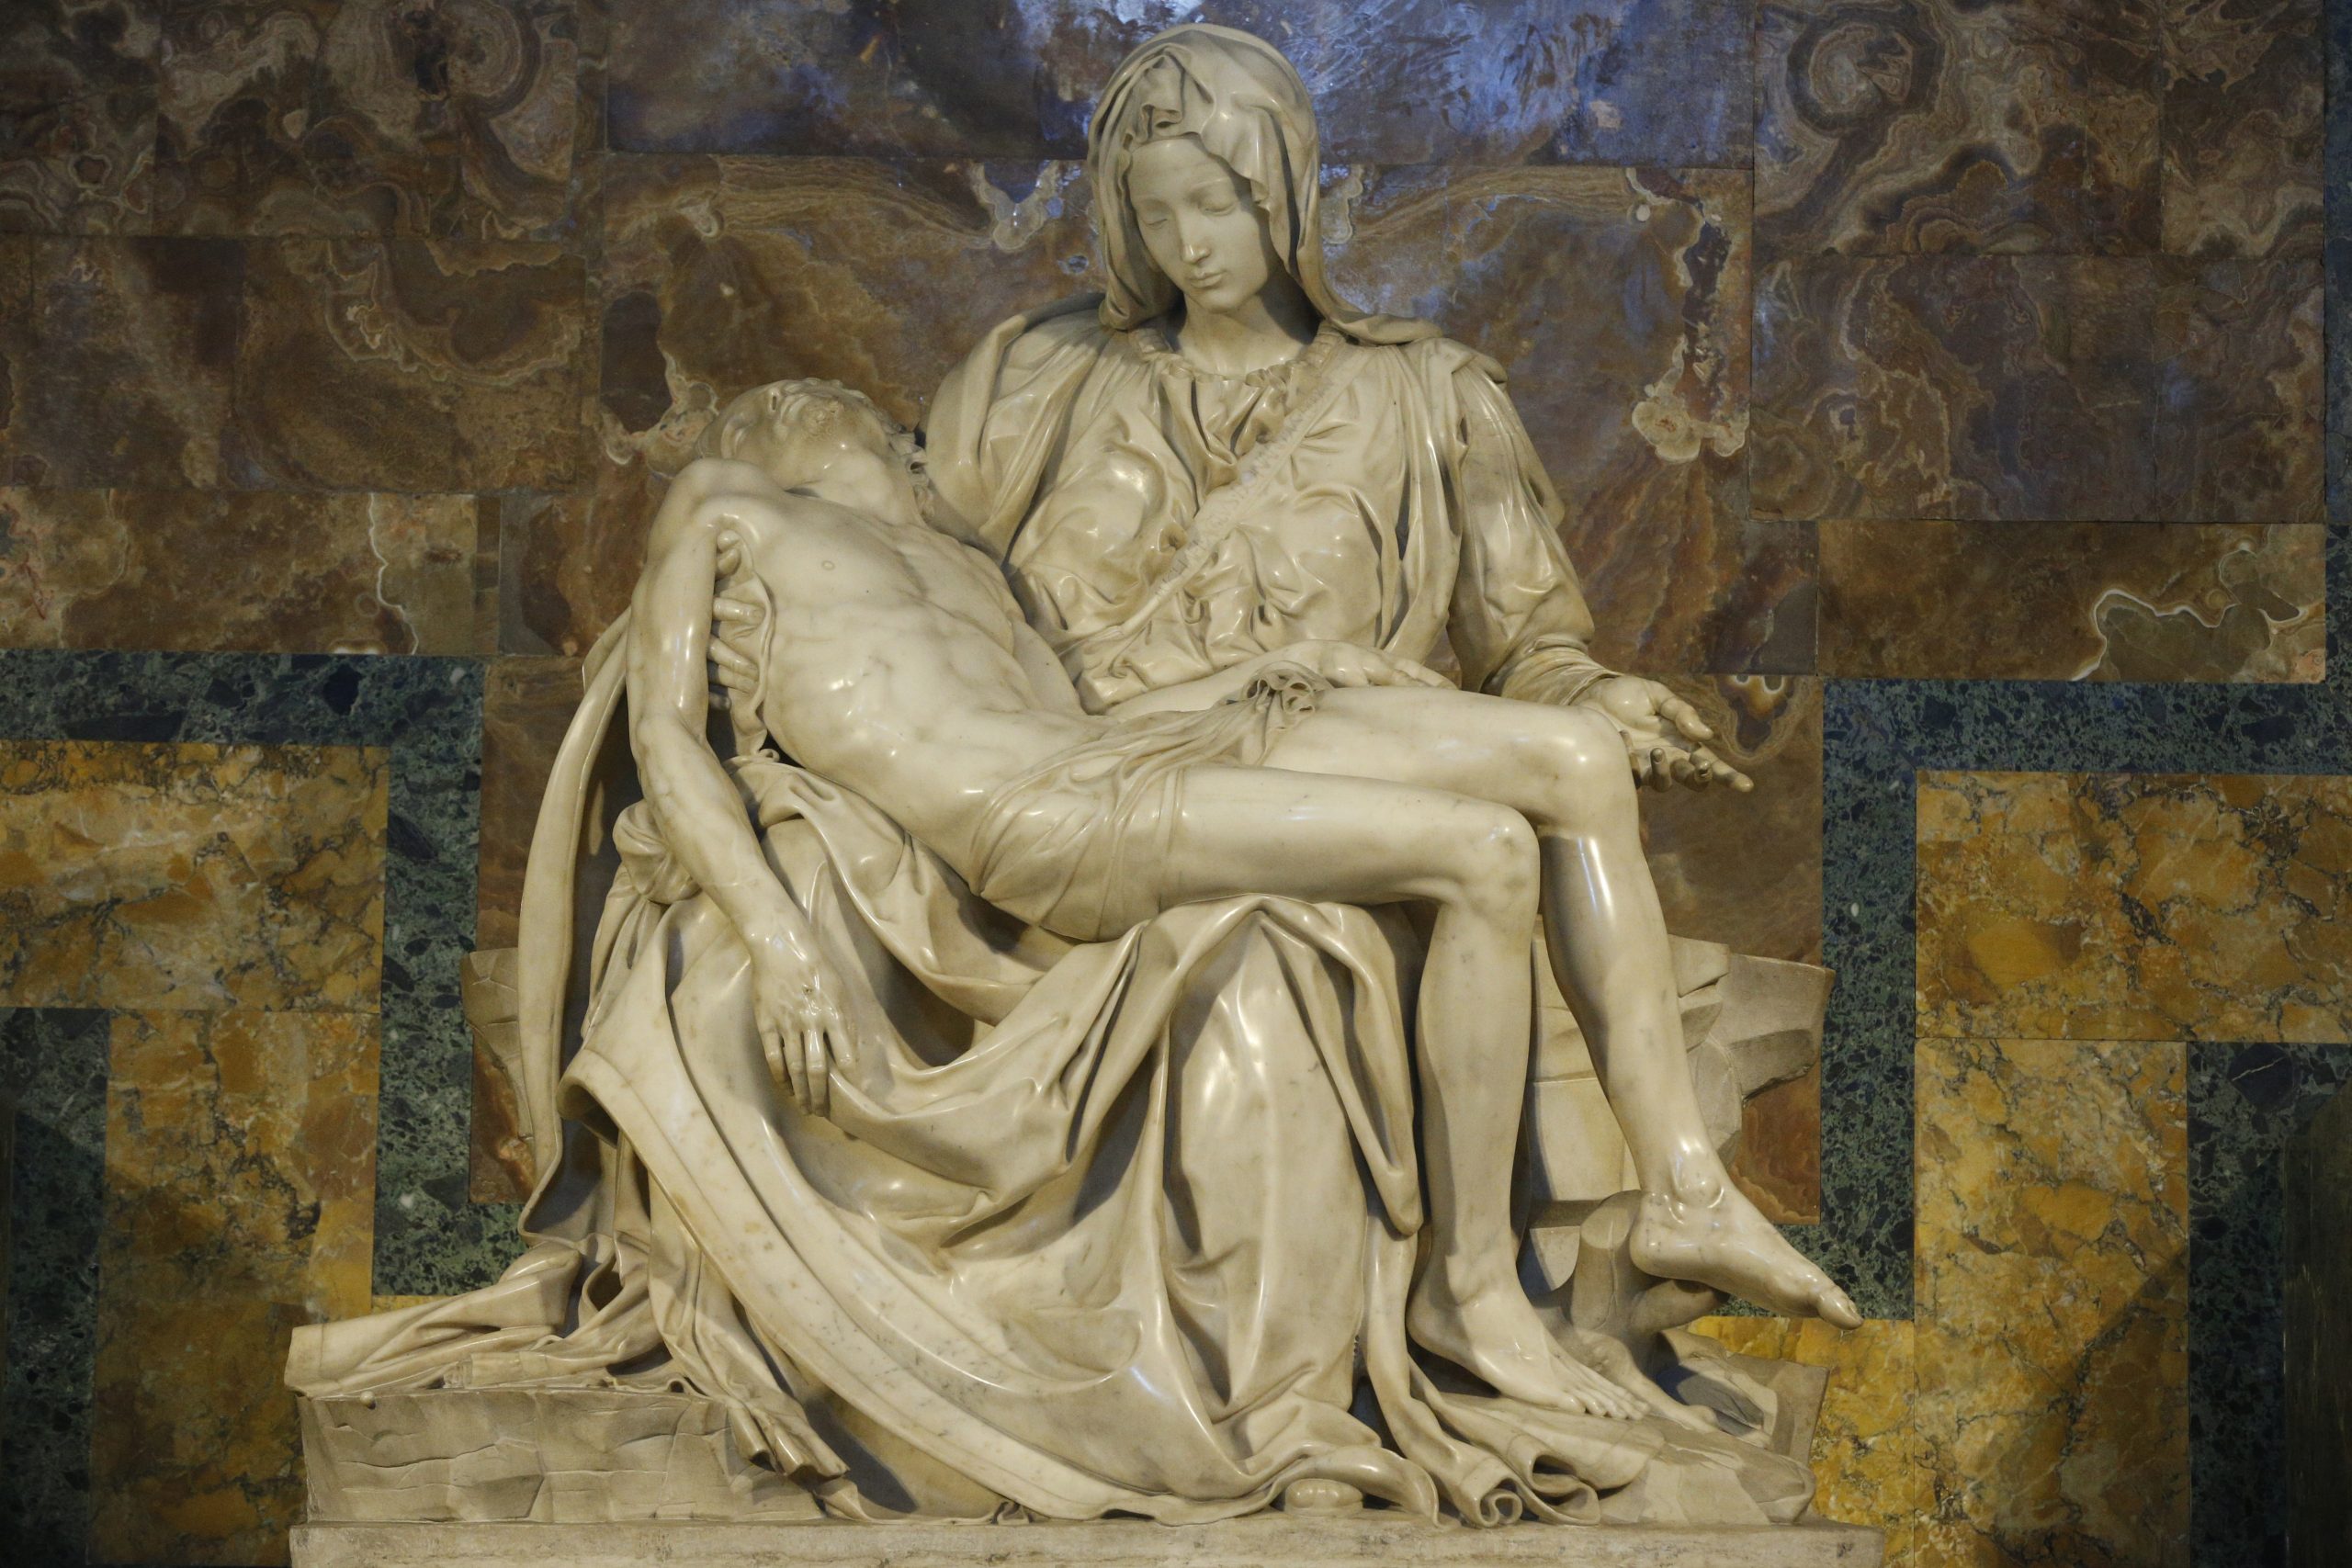 Michaelangelo’s Pieta sculpture. 1499. St. Peter’s Basilica.